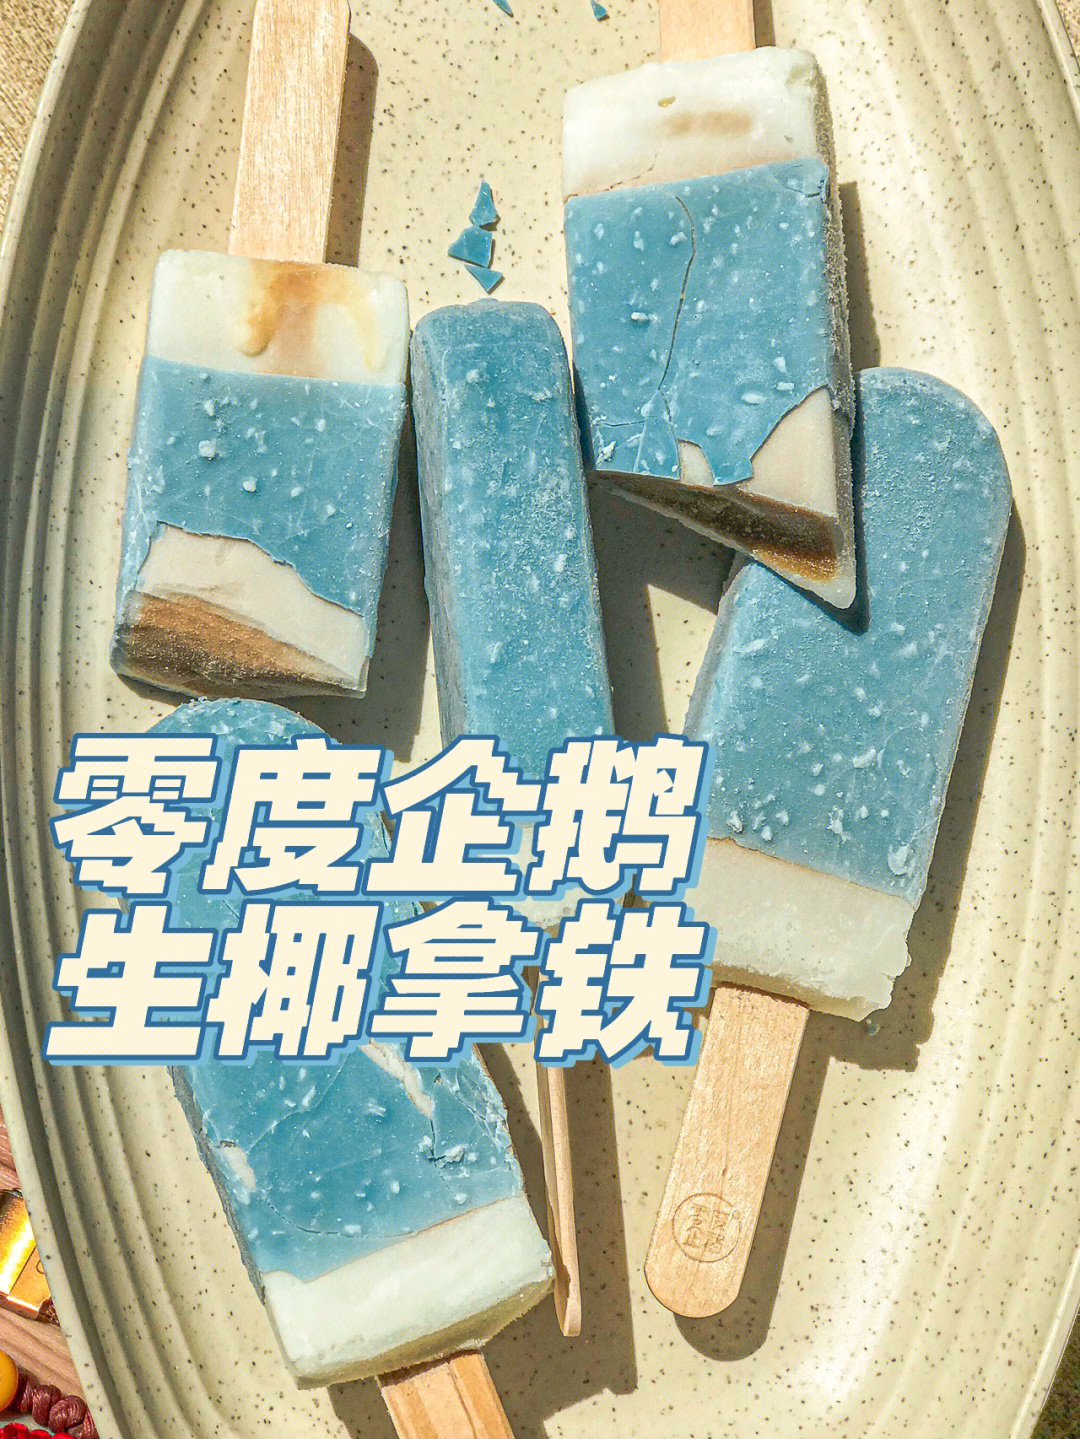 零度企鹅生椰拿铁冰激凌,外边是蓝色的巧克力,海盐薄薄一层碎